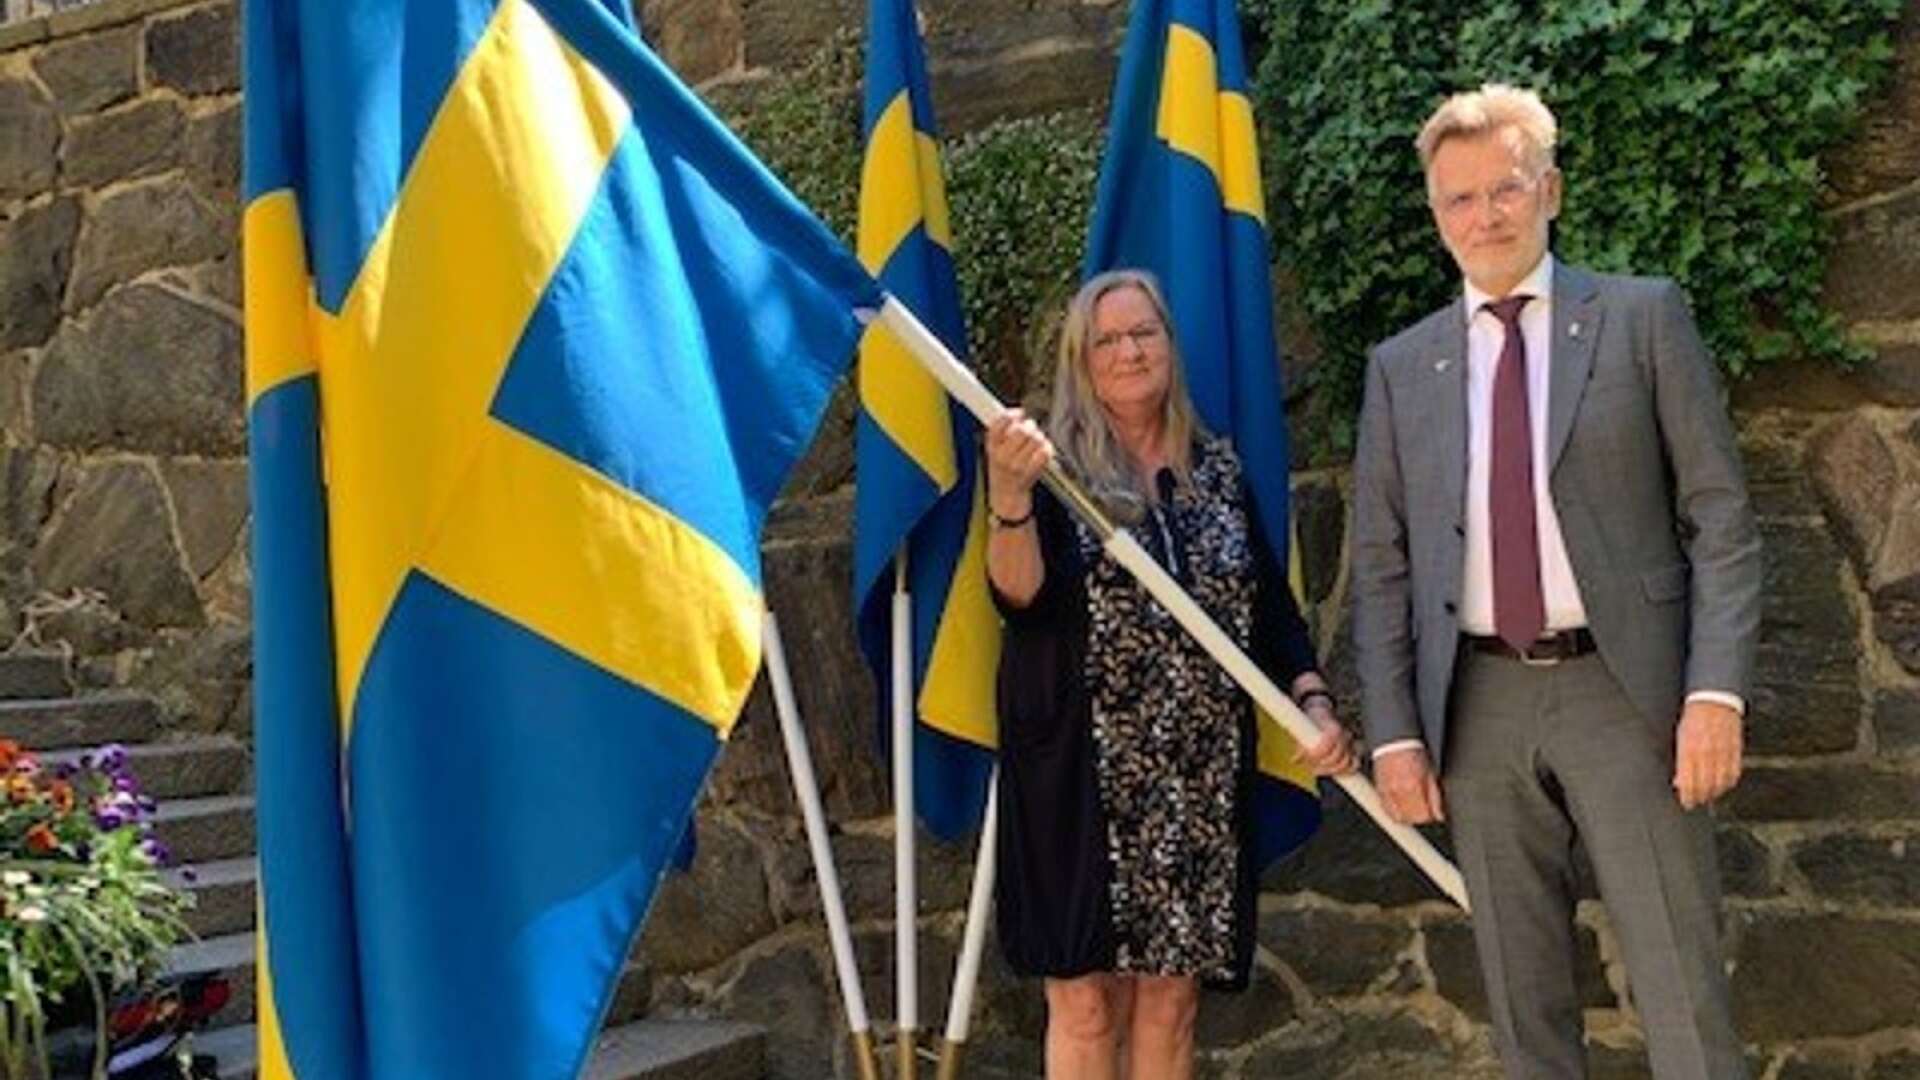 Ann-Brith Johansson mottog en fana för JLIF:s viktiga insatser från landshövdingen i Västra Götalands län, Anders Danielsson. PRIVAT.